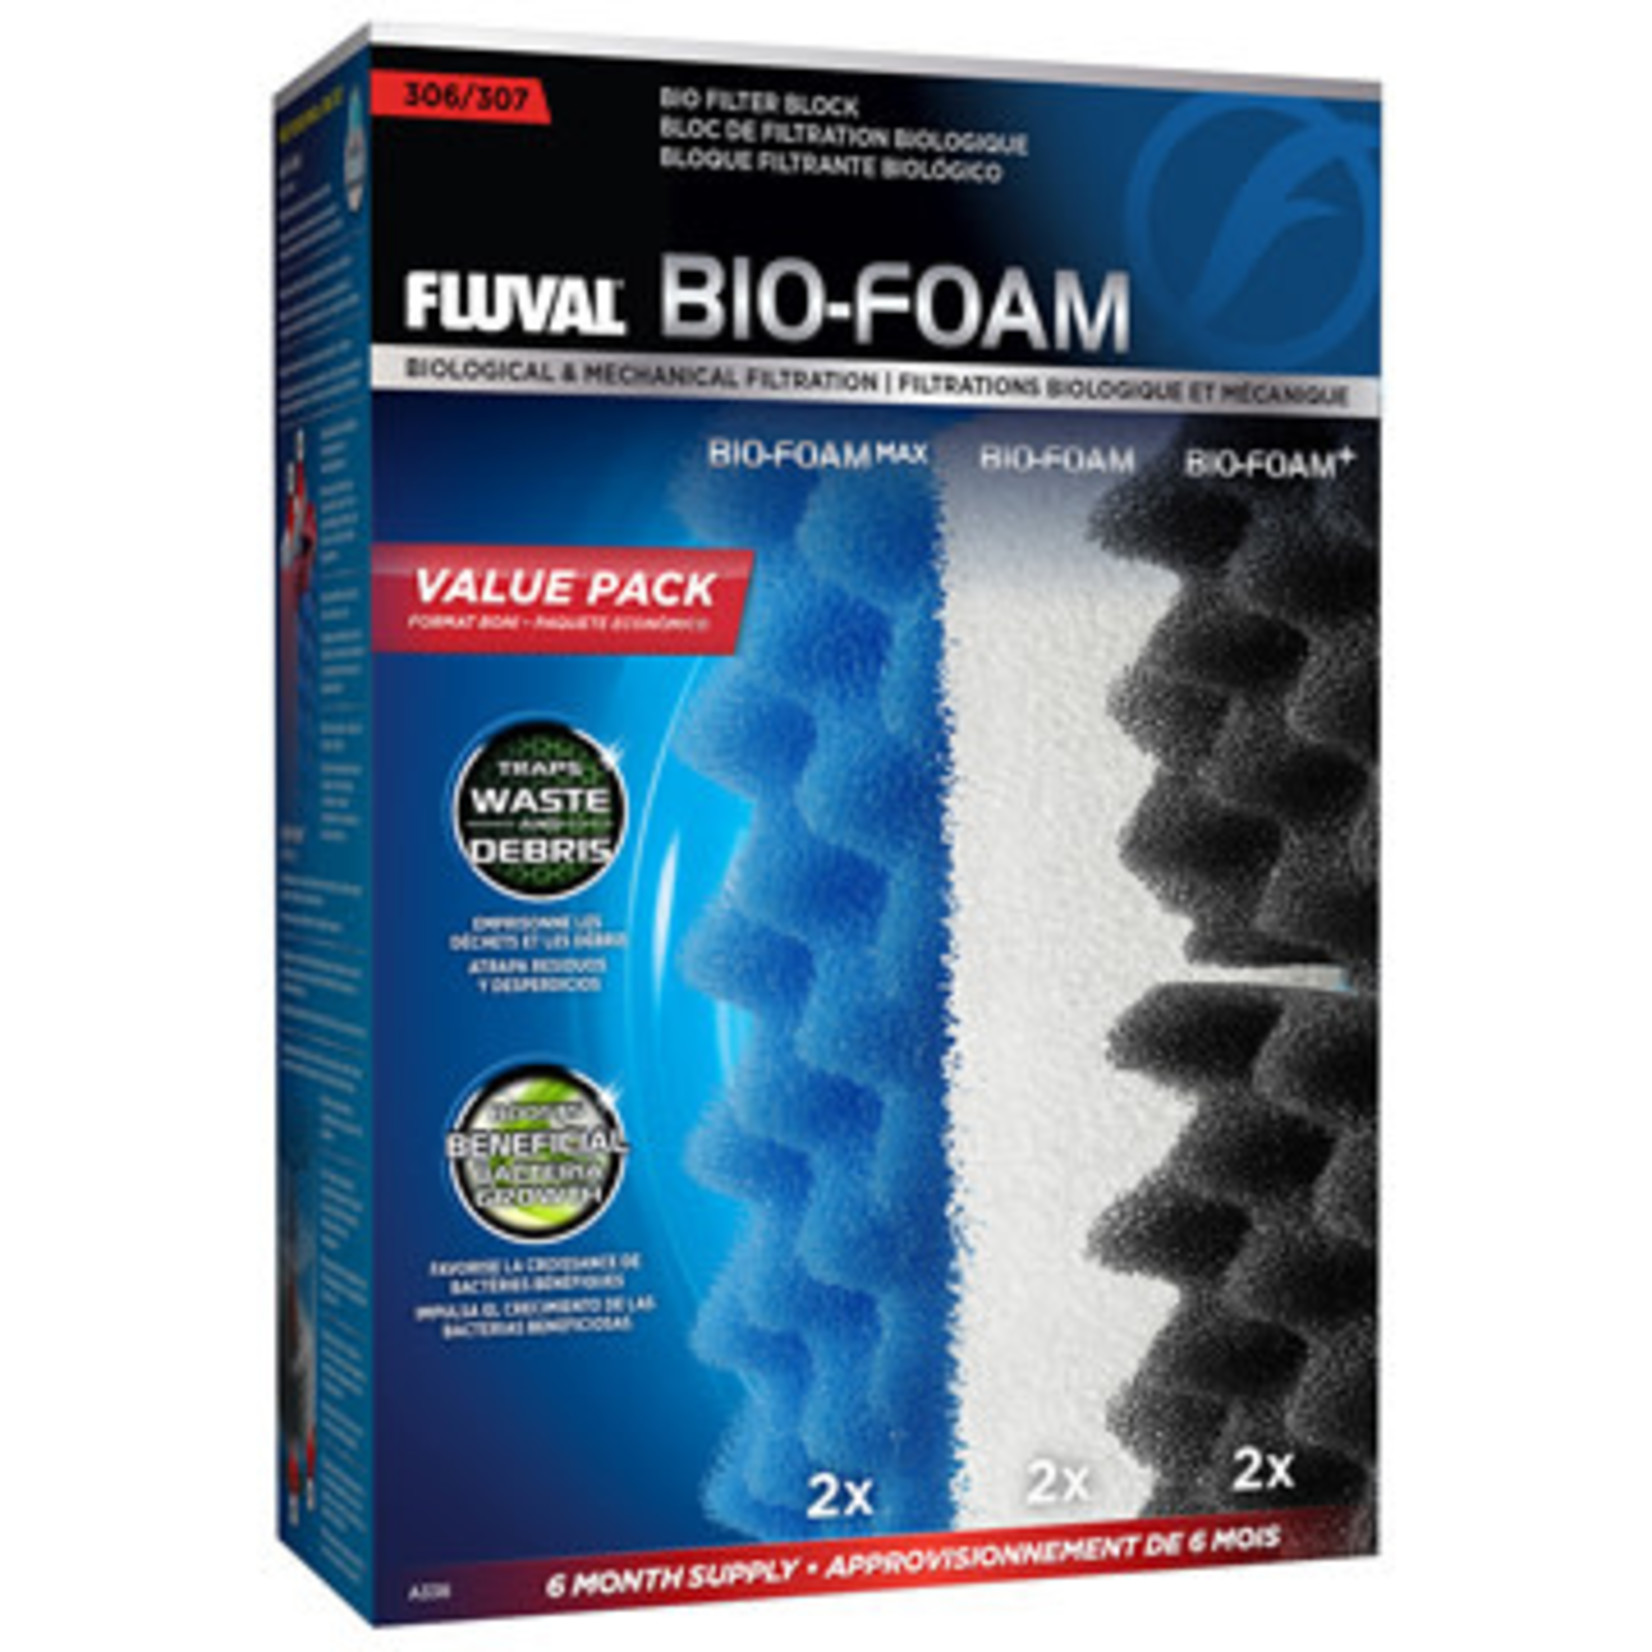 Fluval Fluval 207 Bio-Foam Value Pack